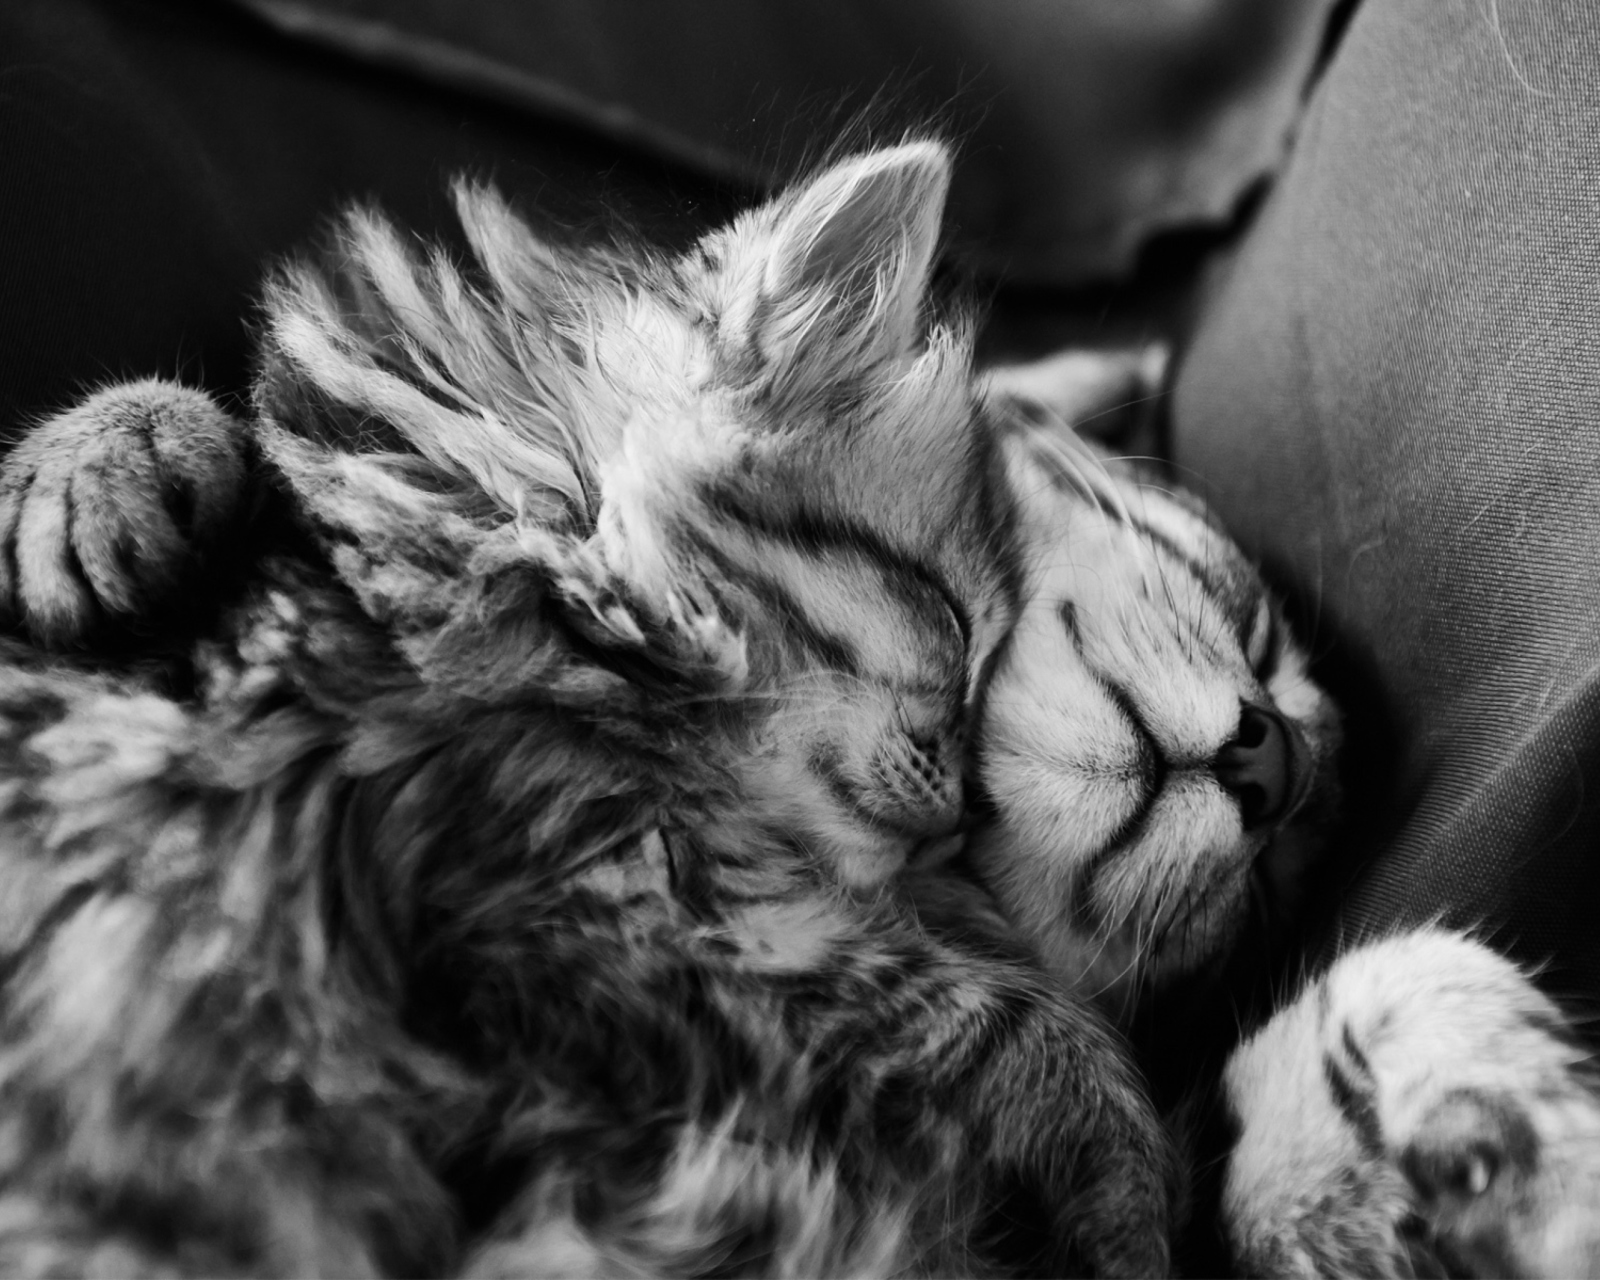 Обои Kittens Sleeping 1600x1280